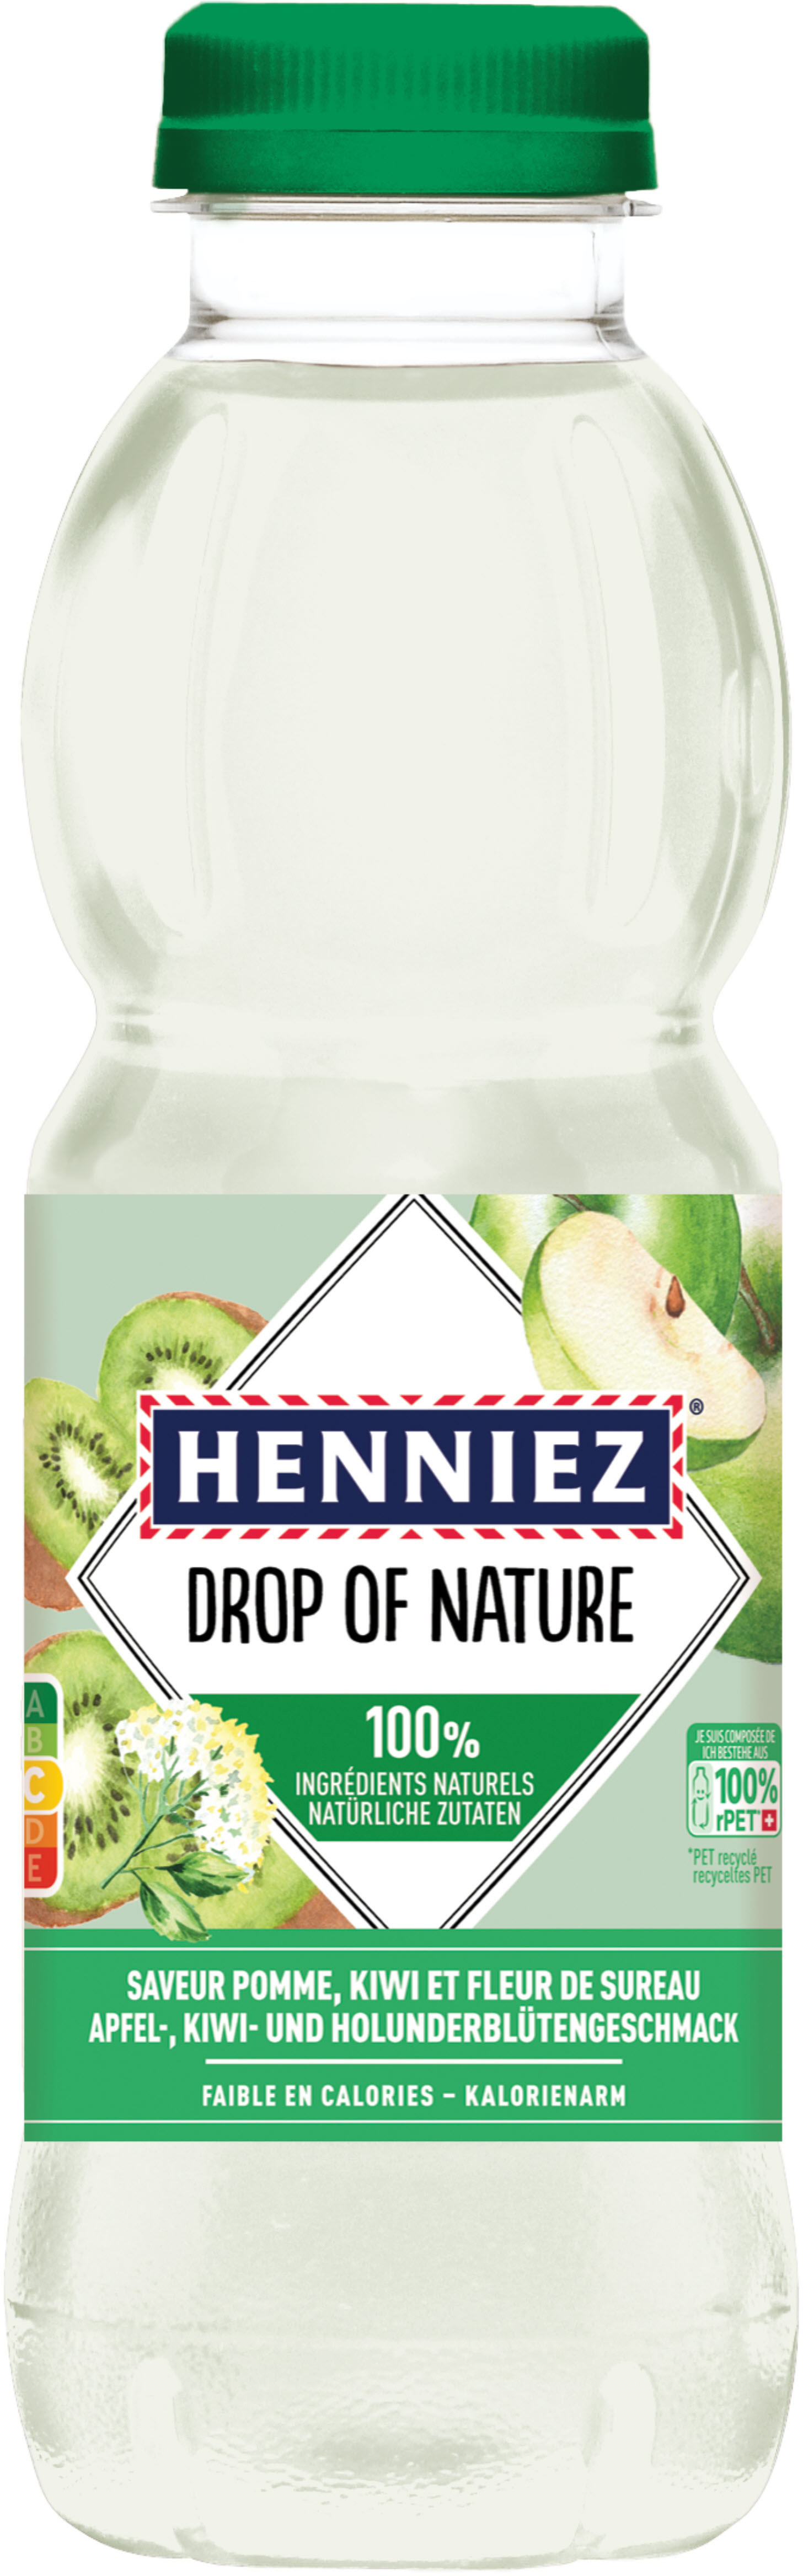 HENNIEZ Drop of Nature Pomme Pet 649250 50 cl, 6 pcs.